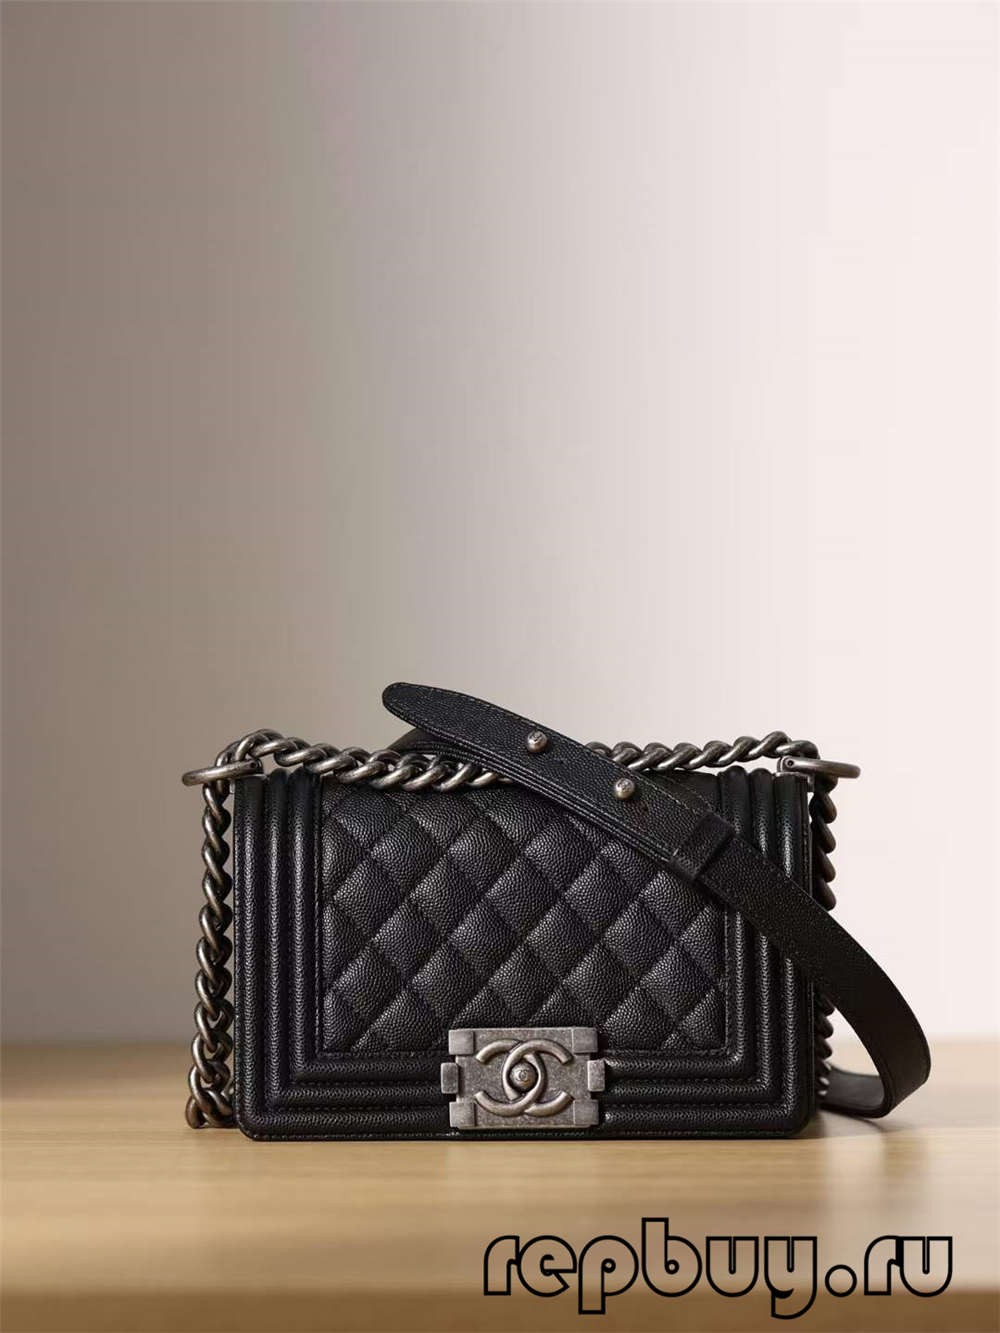 Chanel Leboy Top Replica Handbag Black Small (2022 Updated)-Best Quality Fake designer Bag Review, Replica designer bag ru